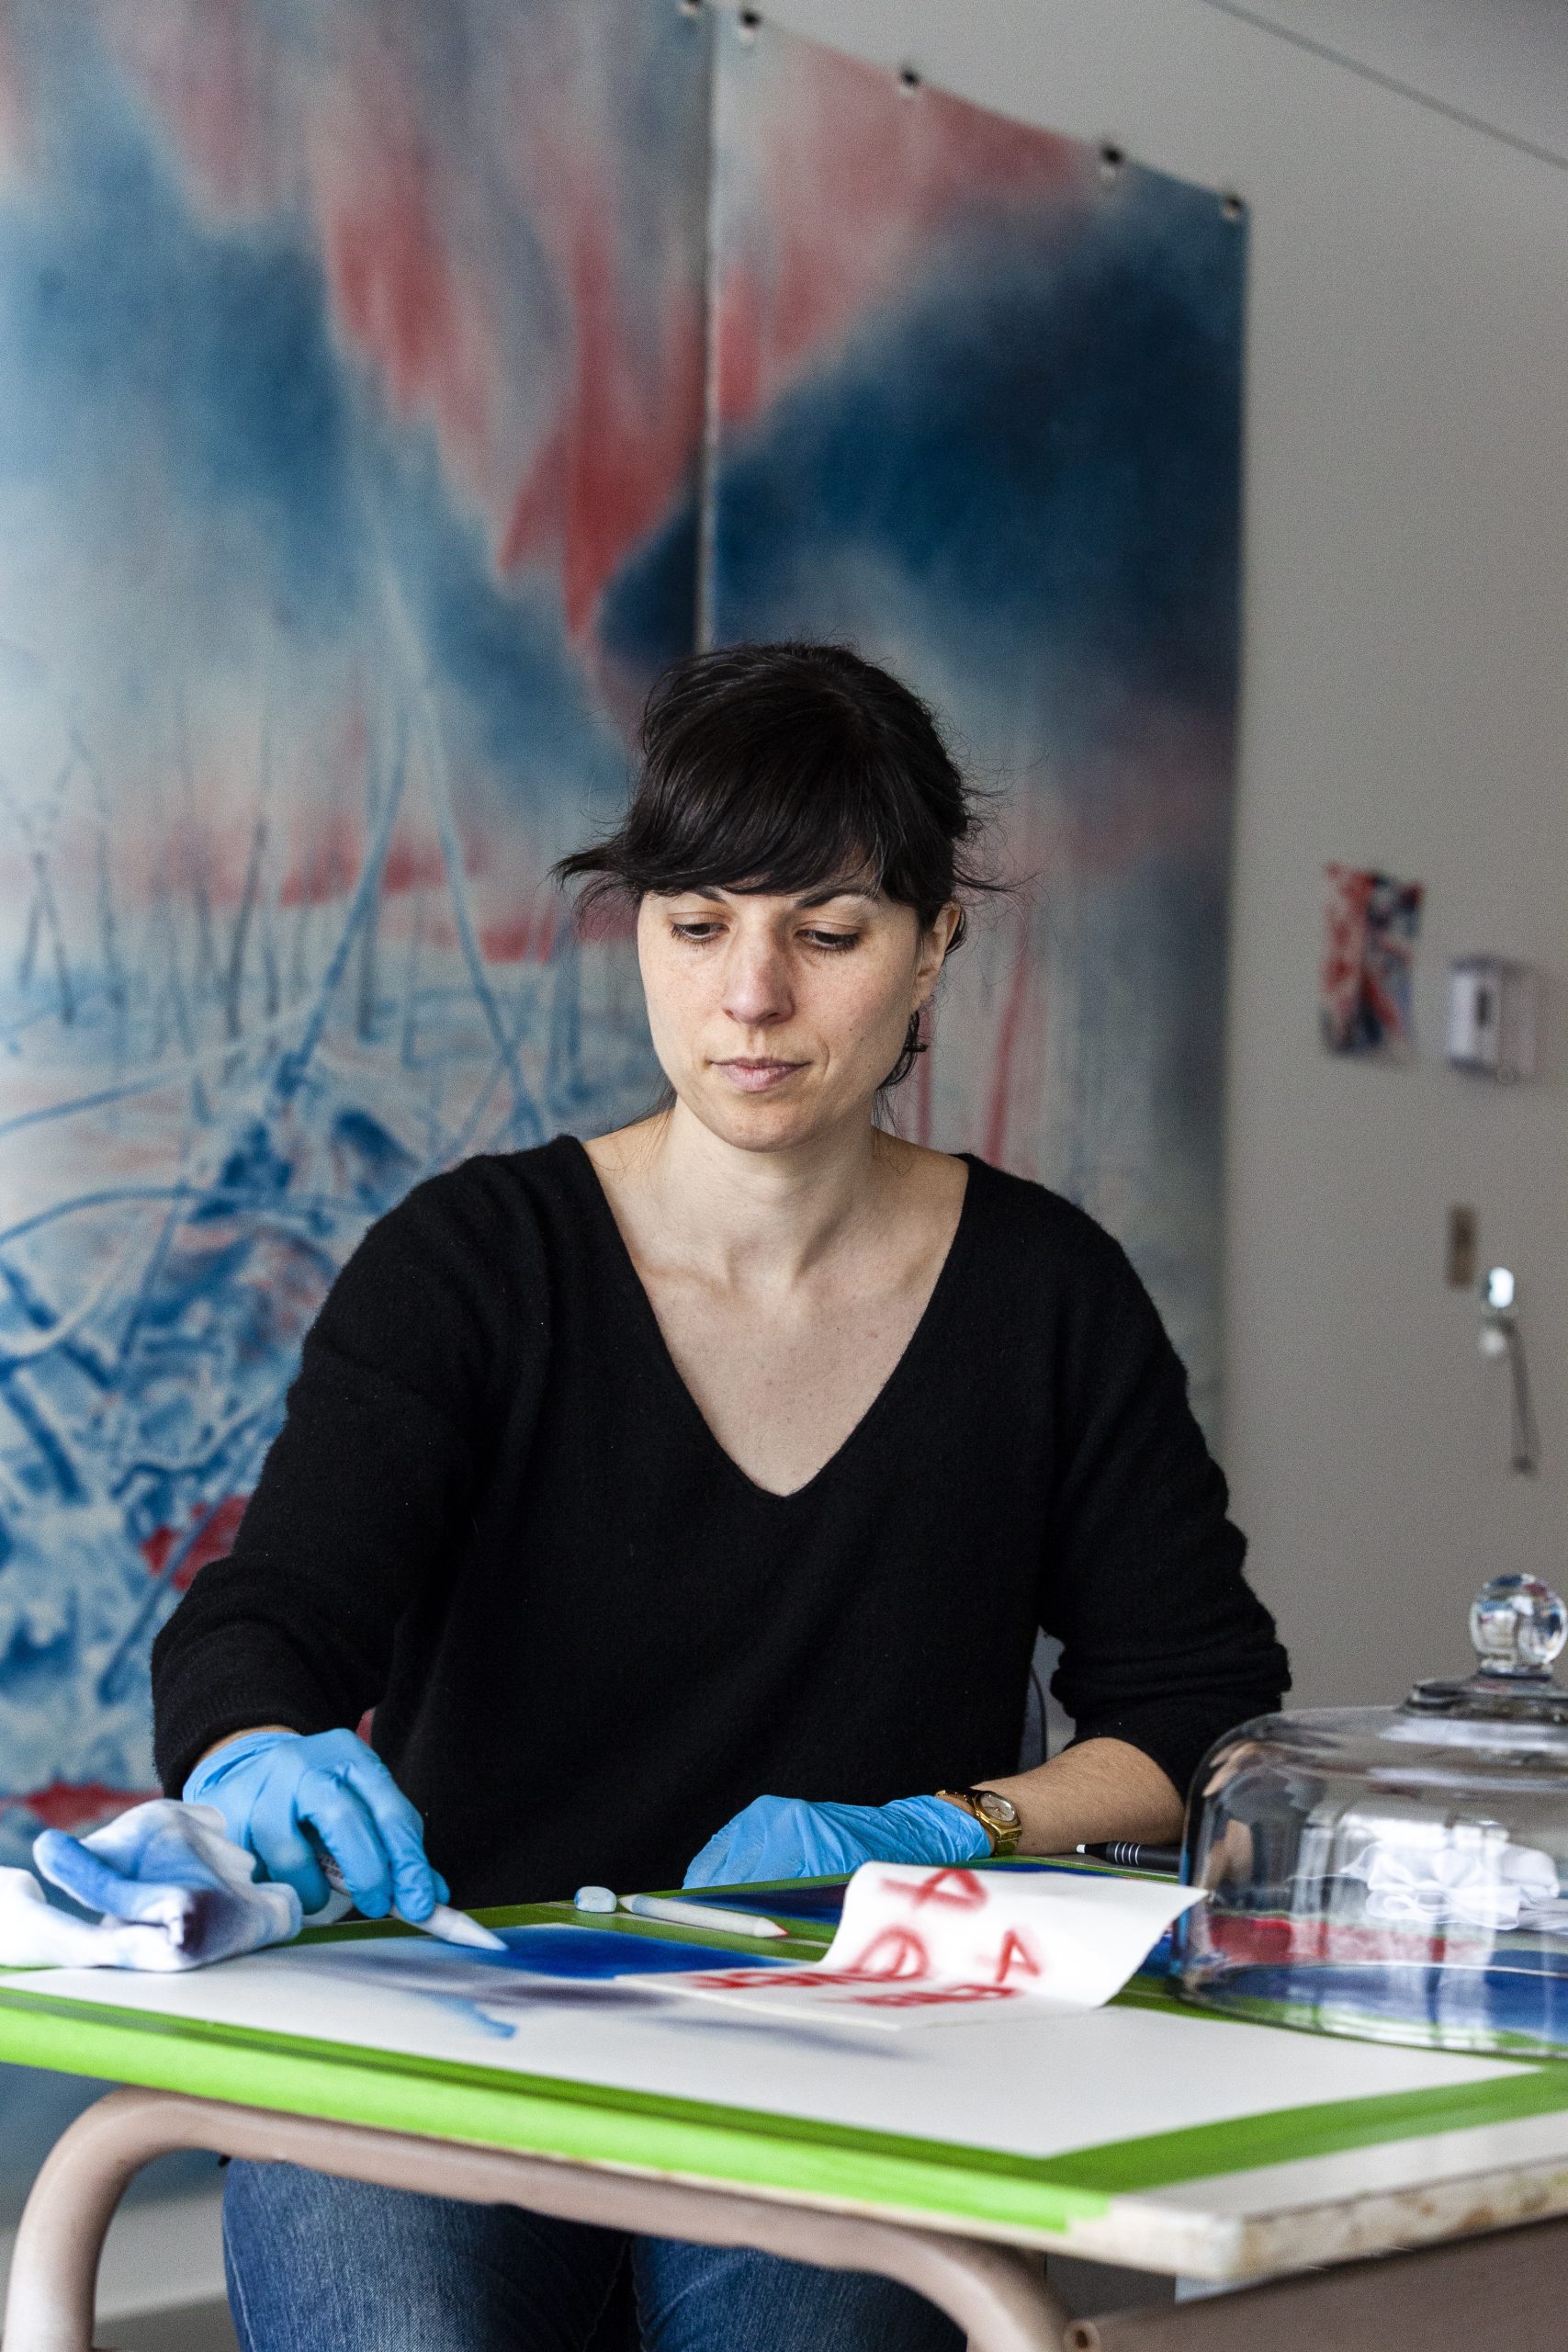 Andréanne Godin, Expérimentations en atelier, 2022. Crédit photo: ENE / Jean-Sébastien Veilleux photographe.